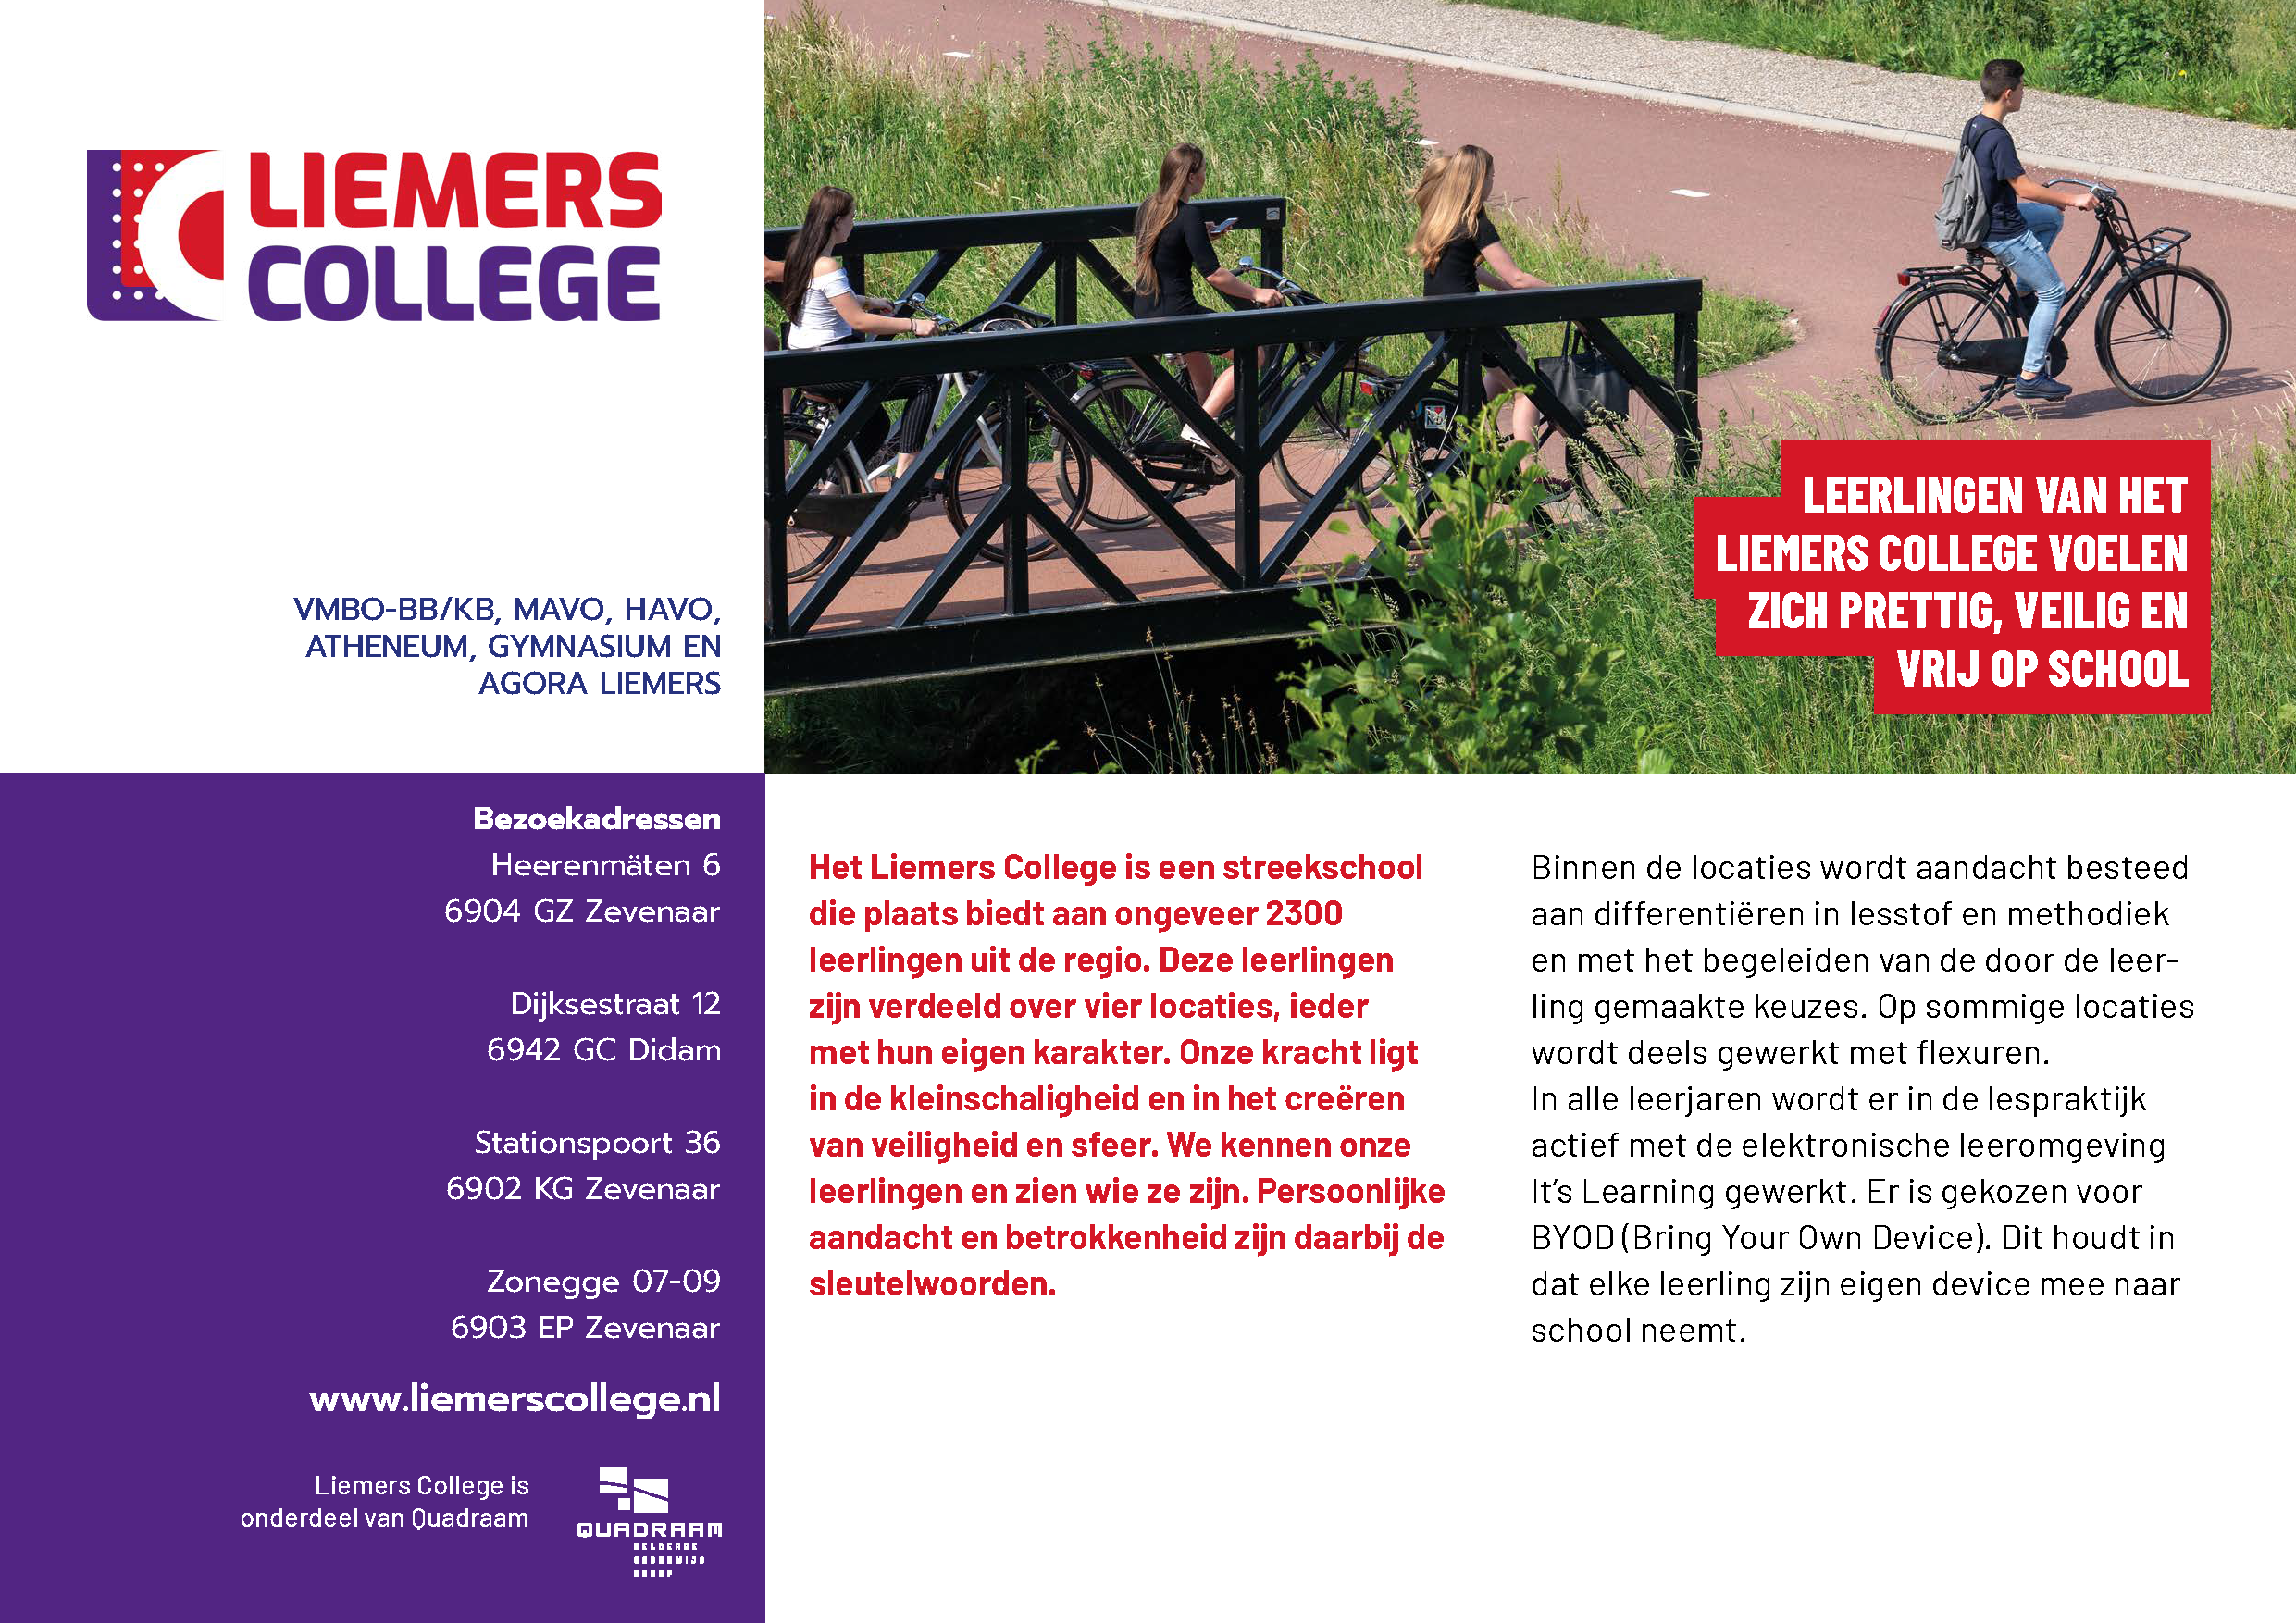 Liemers College